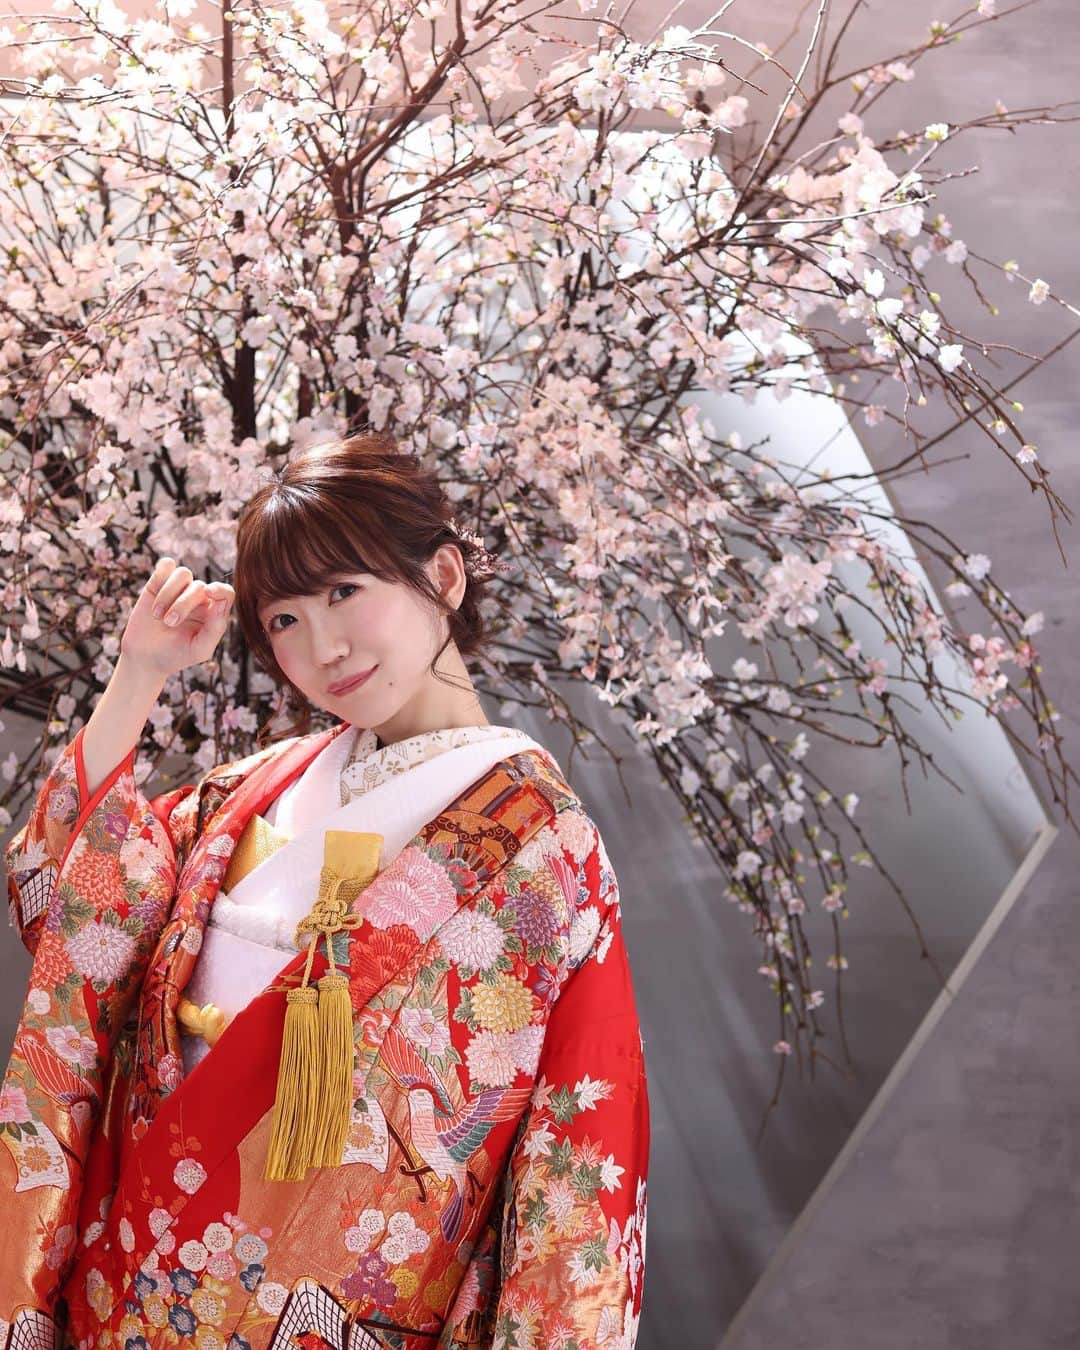 マコ・プリンシパルのインスタグラム：「My bridal dress👰‍♀️ This is a traditional Japanese “Irouchikake”🎎🌸  🌸🌸🌸🌸🌸🌸🌸🌸  本当は今年の春に結婚式をする予定だったのだけど、妊娠がわかり急遽前撮りだけ先に行いました♡  今まで色々な洋装の衣装を着てきたから、和装をチョイス。 式では白無垢を着る予定なので、撮影は色打掛けに。  色打掛けの赤色は、生命や太陽を象徴する神聖な色で魔除けの力があって☀️ 血液の色であることから、嫁ぎ先の色に染まる意味合いも持ってるんだって。  本当は色打掛けの後は、「嫁ぎ先での生まれ変わり」を意味してるから、白無垢を着れないルールらしいのだけど、、 そこは何度でも生まれ変わるフェニックス風に独自のルールで🔥🐣💕  あんみつ姫みたいで大満足なのでした👸♡  #花嫁衣装 #前撮り #プレ花嫁 #和装 #和装前撮り #色打掛け #フォトウェディング #bridal #bridalmakeup #weddingphotography #weddingphoto #irouchikake #kimono #kimonostyle #kimonofashion #tokyo」